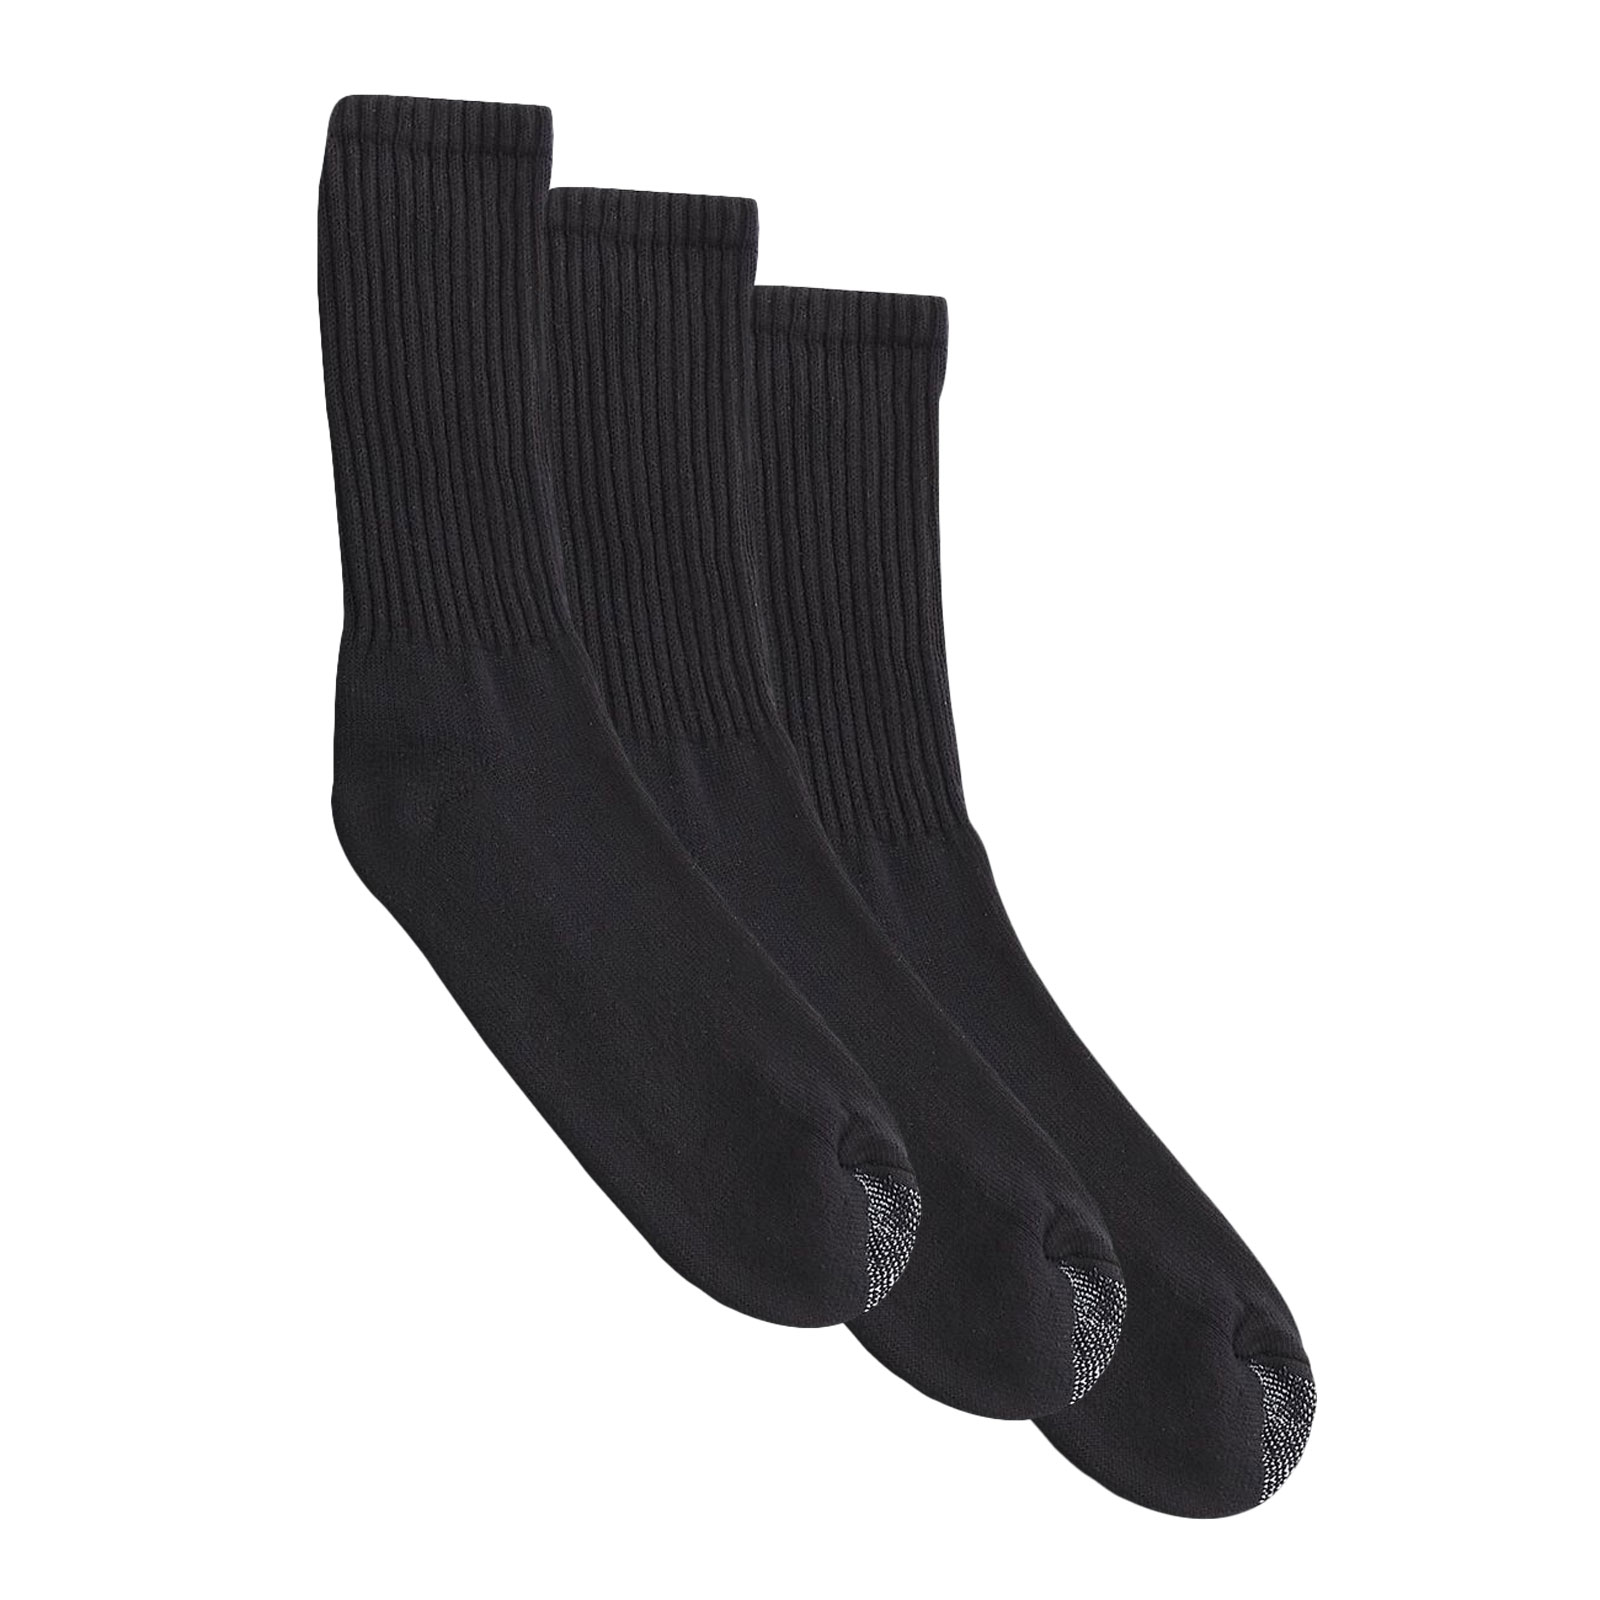 Silvertoe Men's Cushioned Crew Socks - 3 Pair